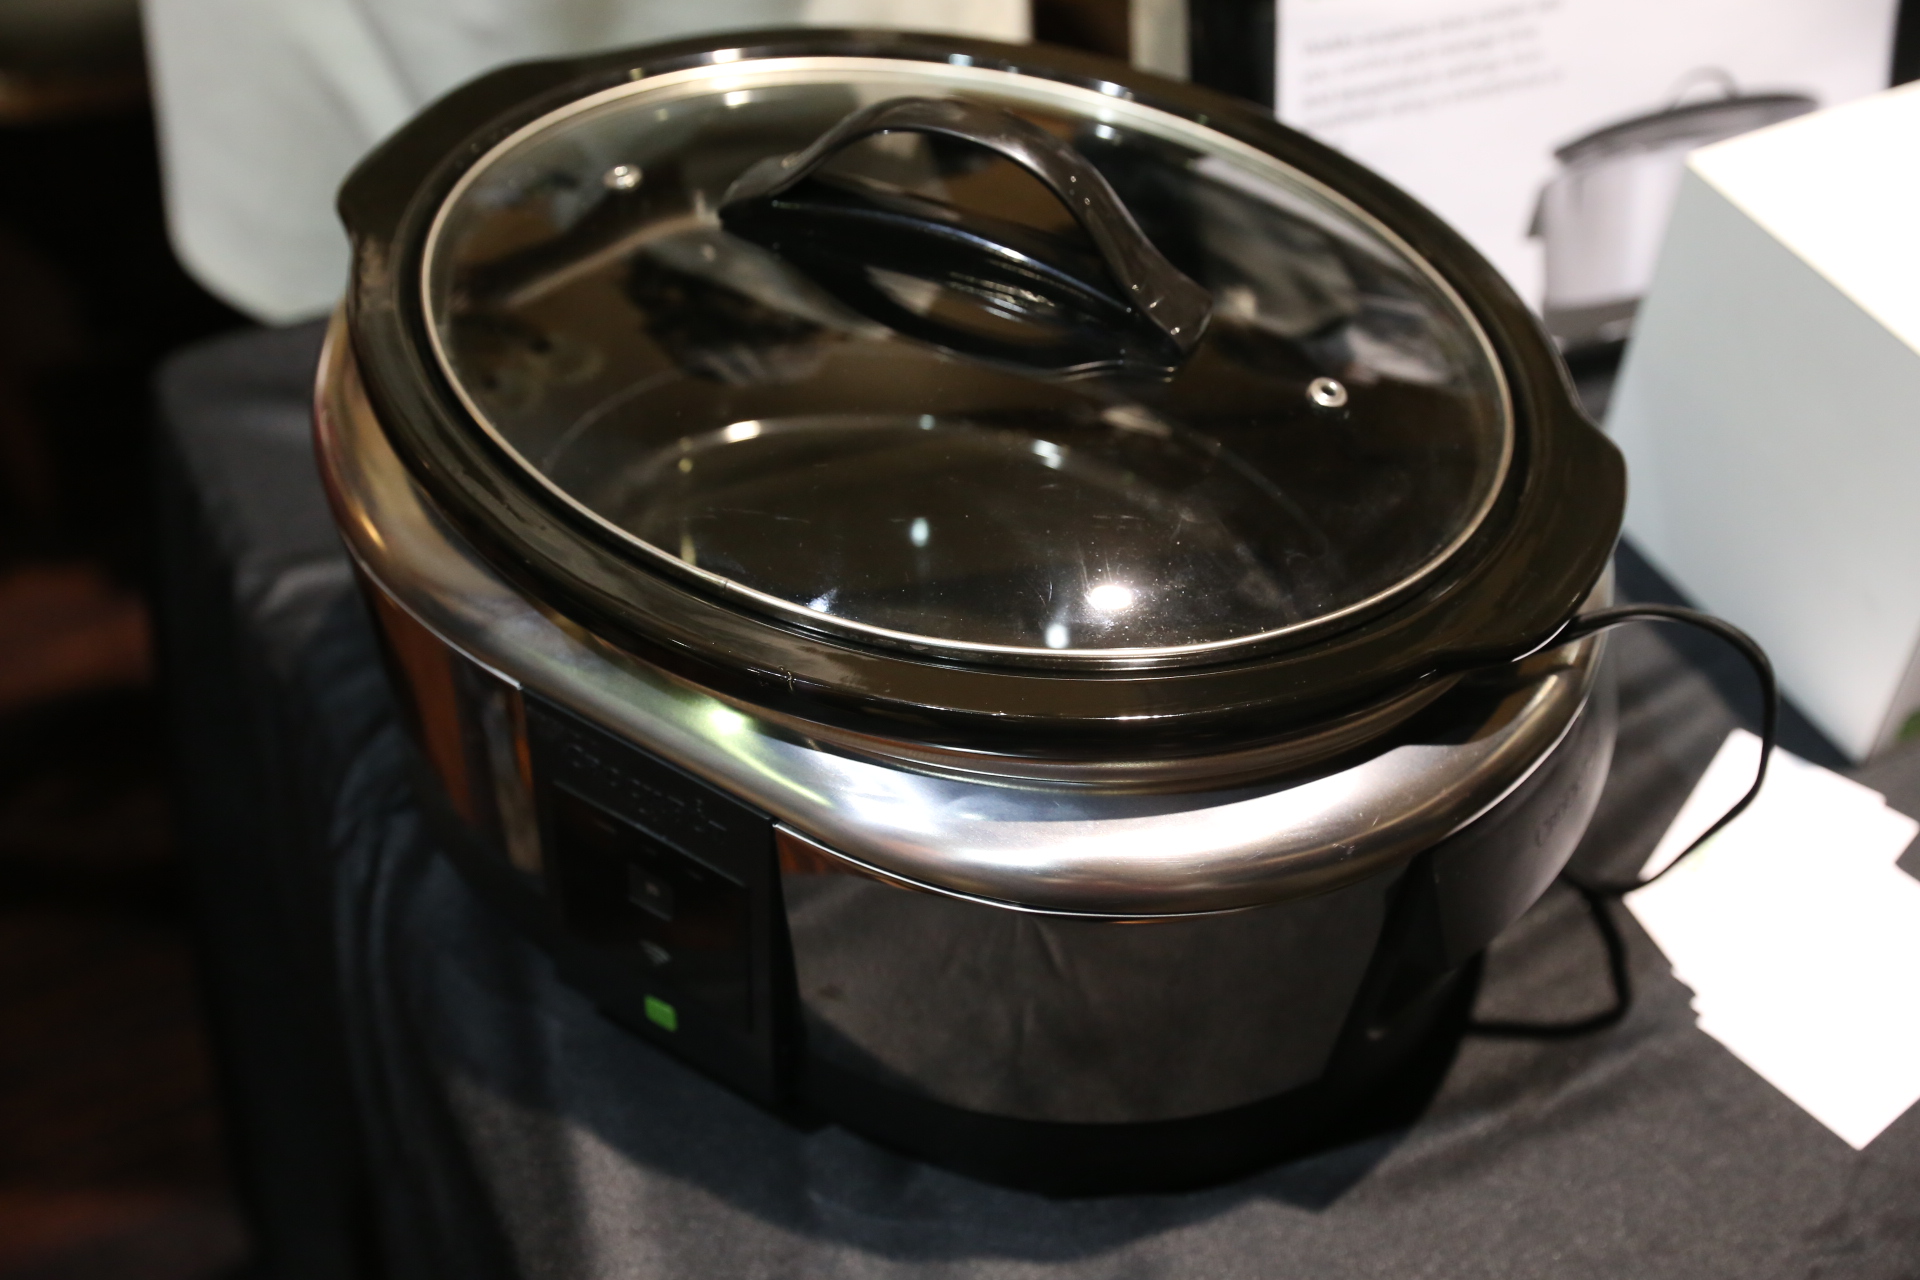 Belkin Crock-Pot Smart Slow Cooker With WeMo Review